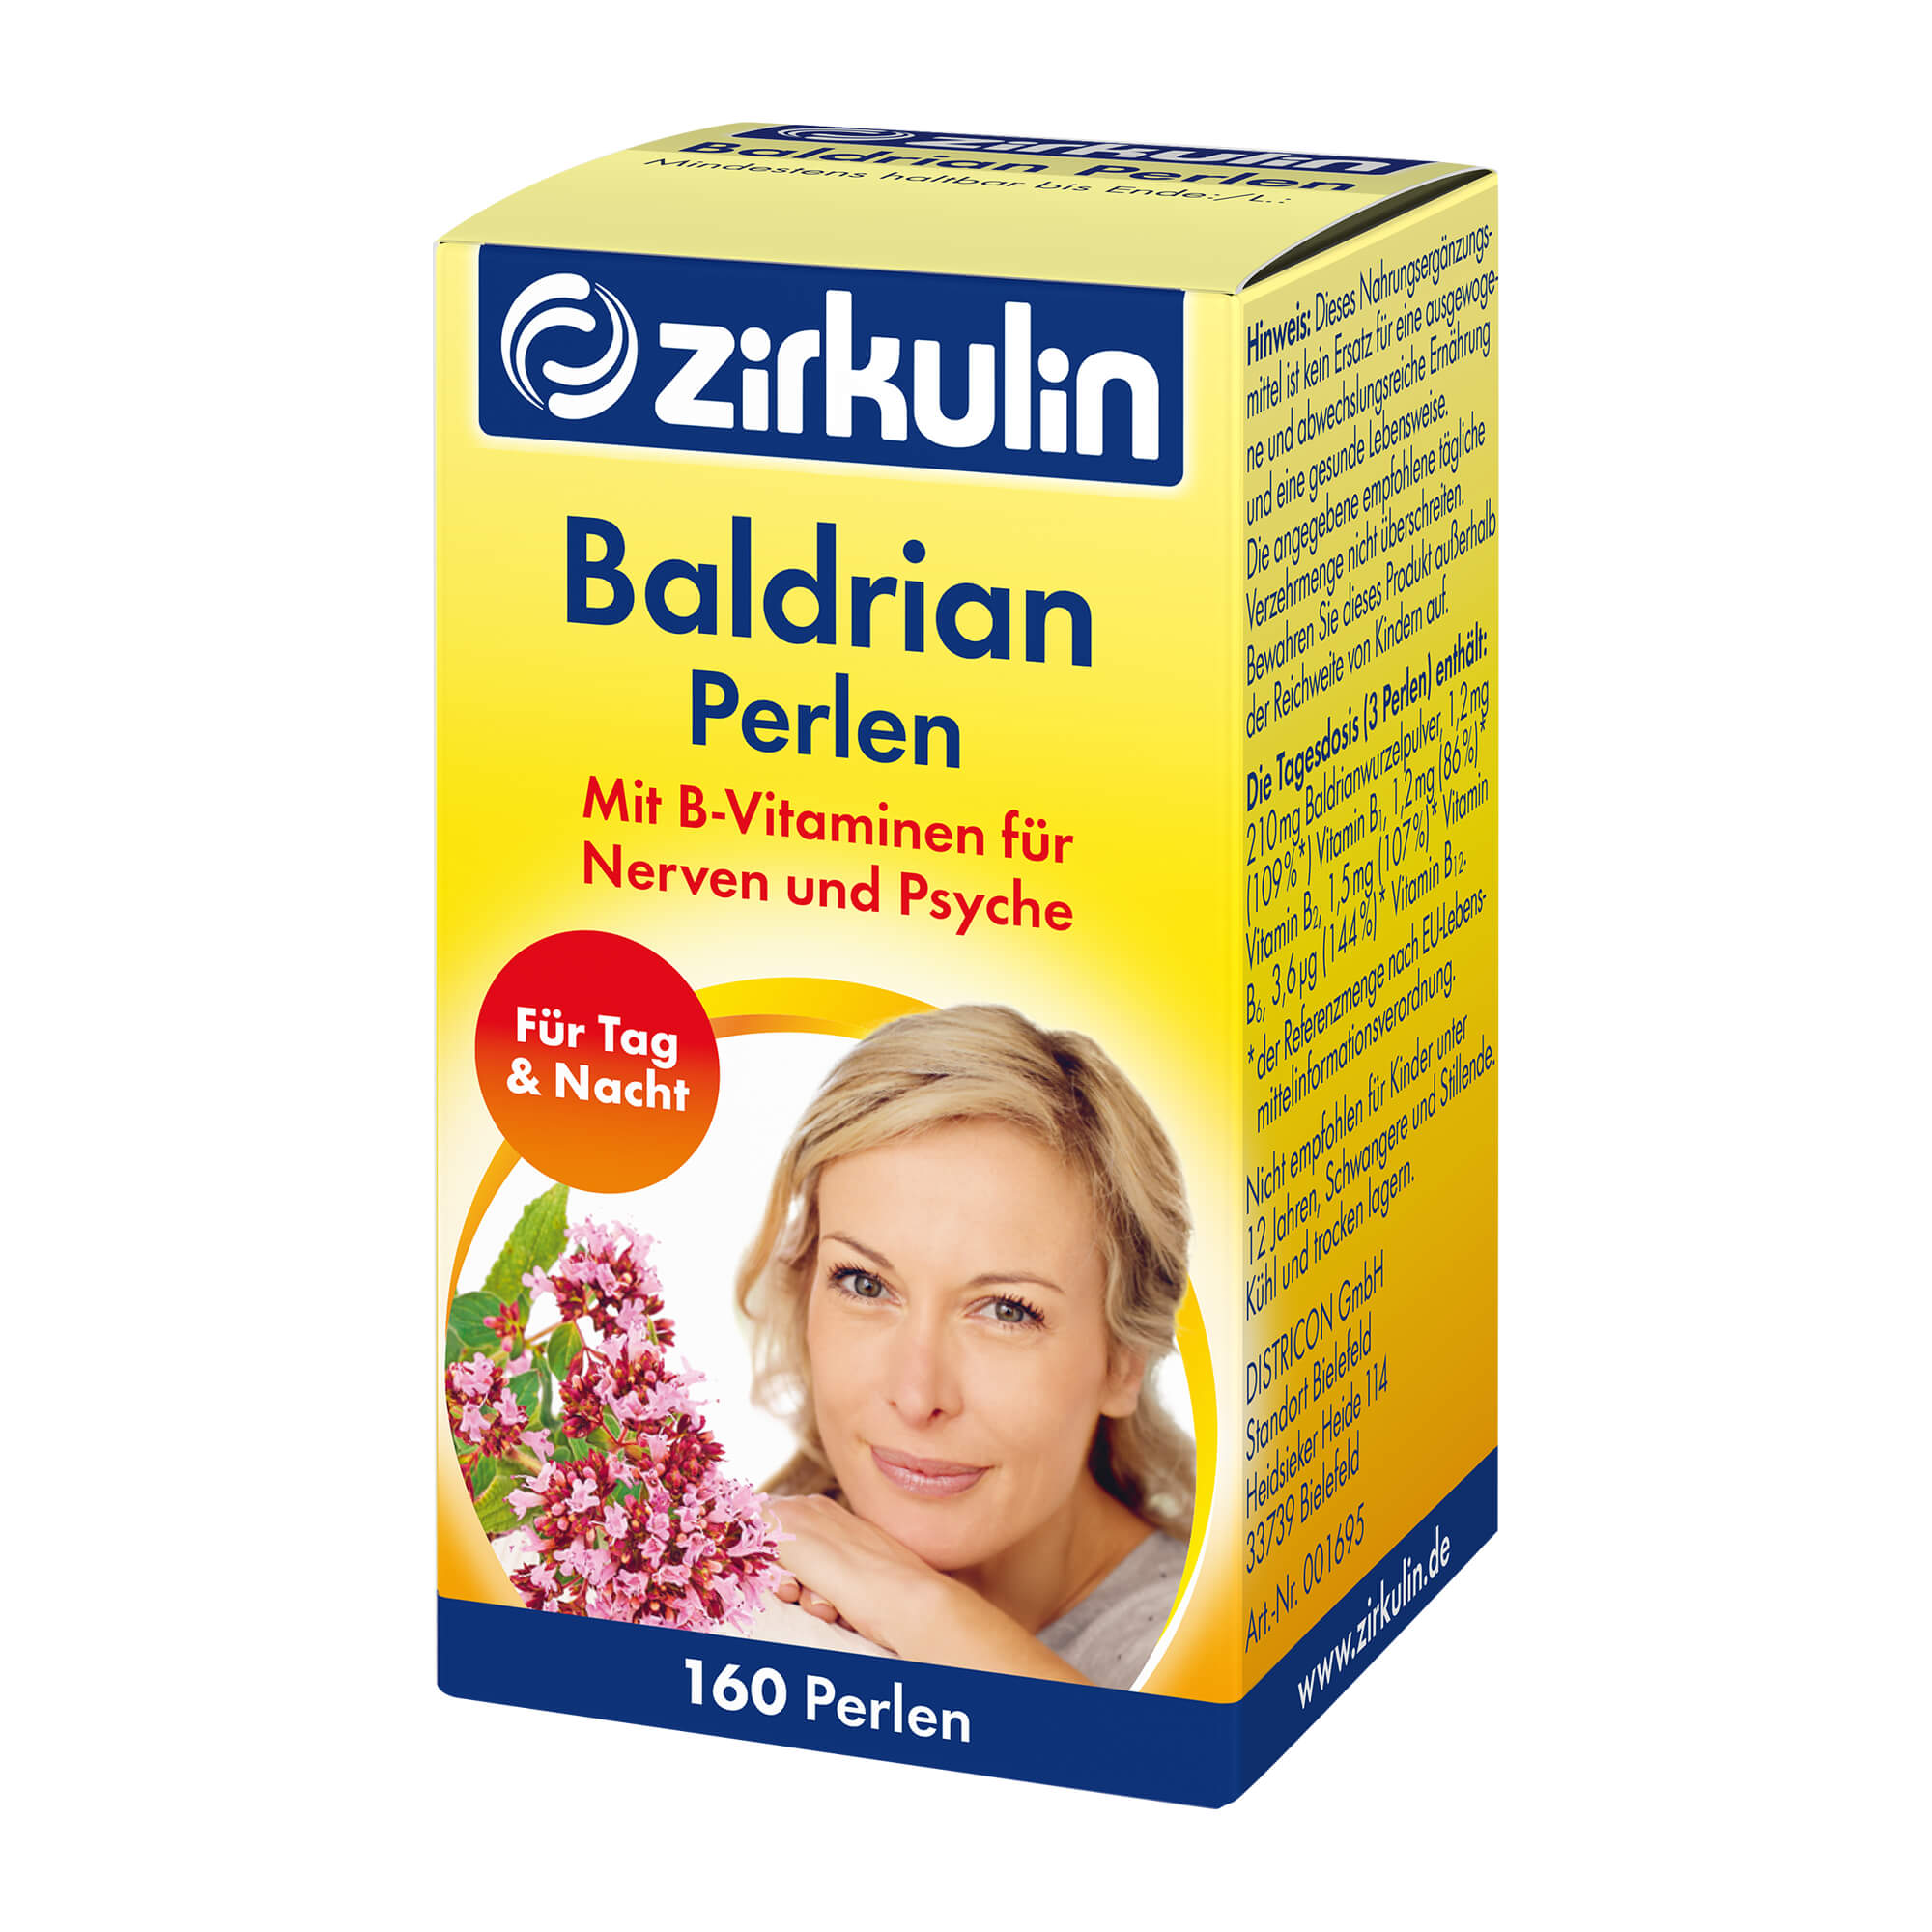 Nahrungsergänzungsmittel mit Baldrian und B-Vitaminen.